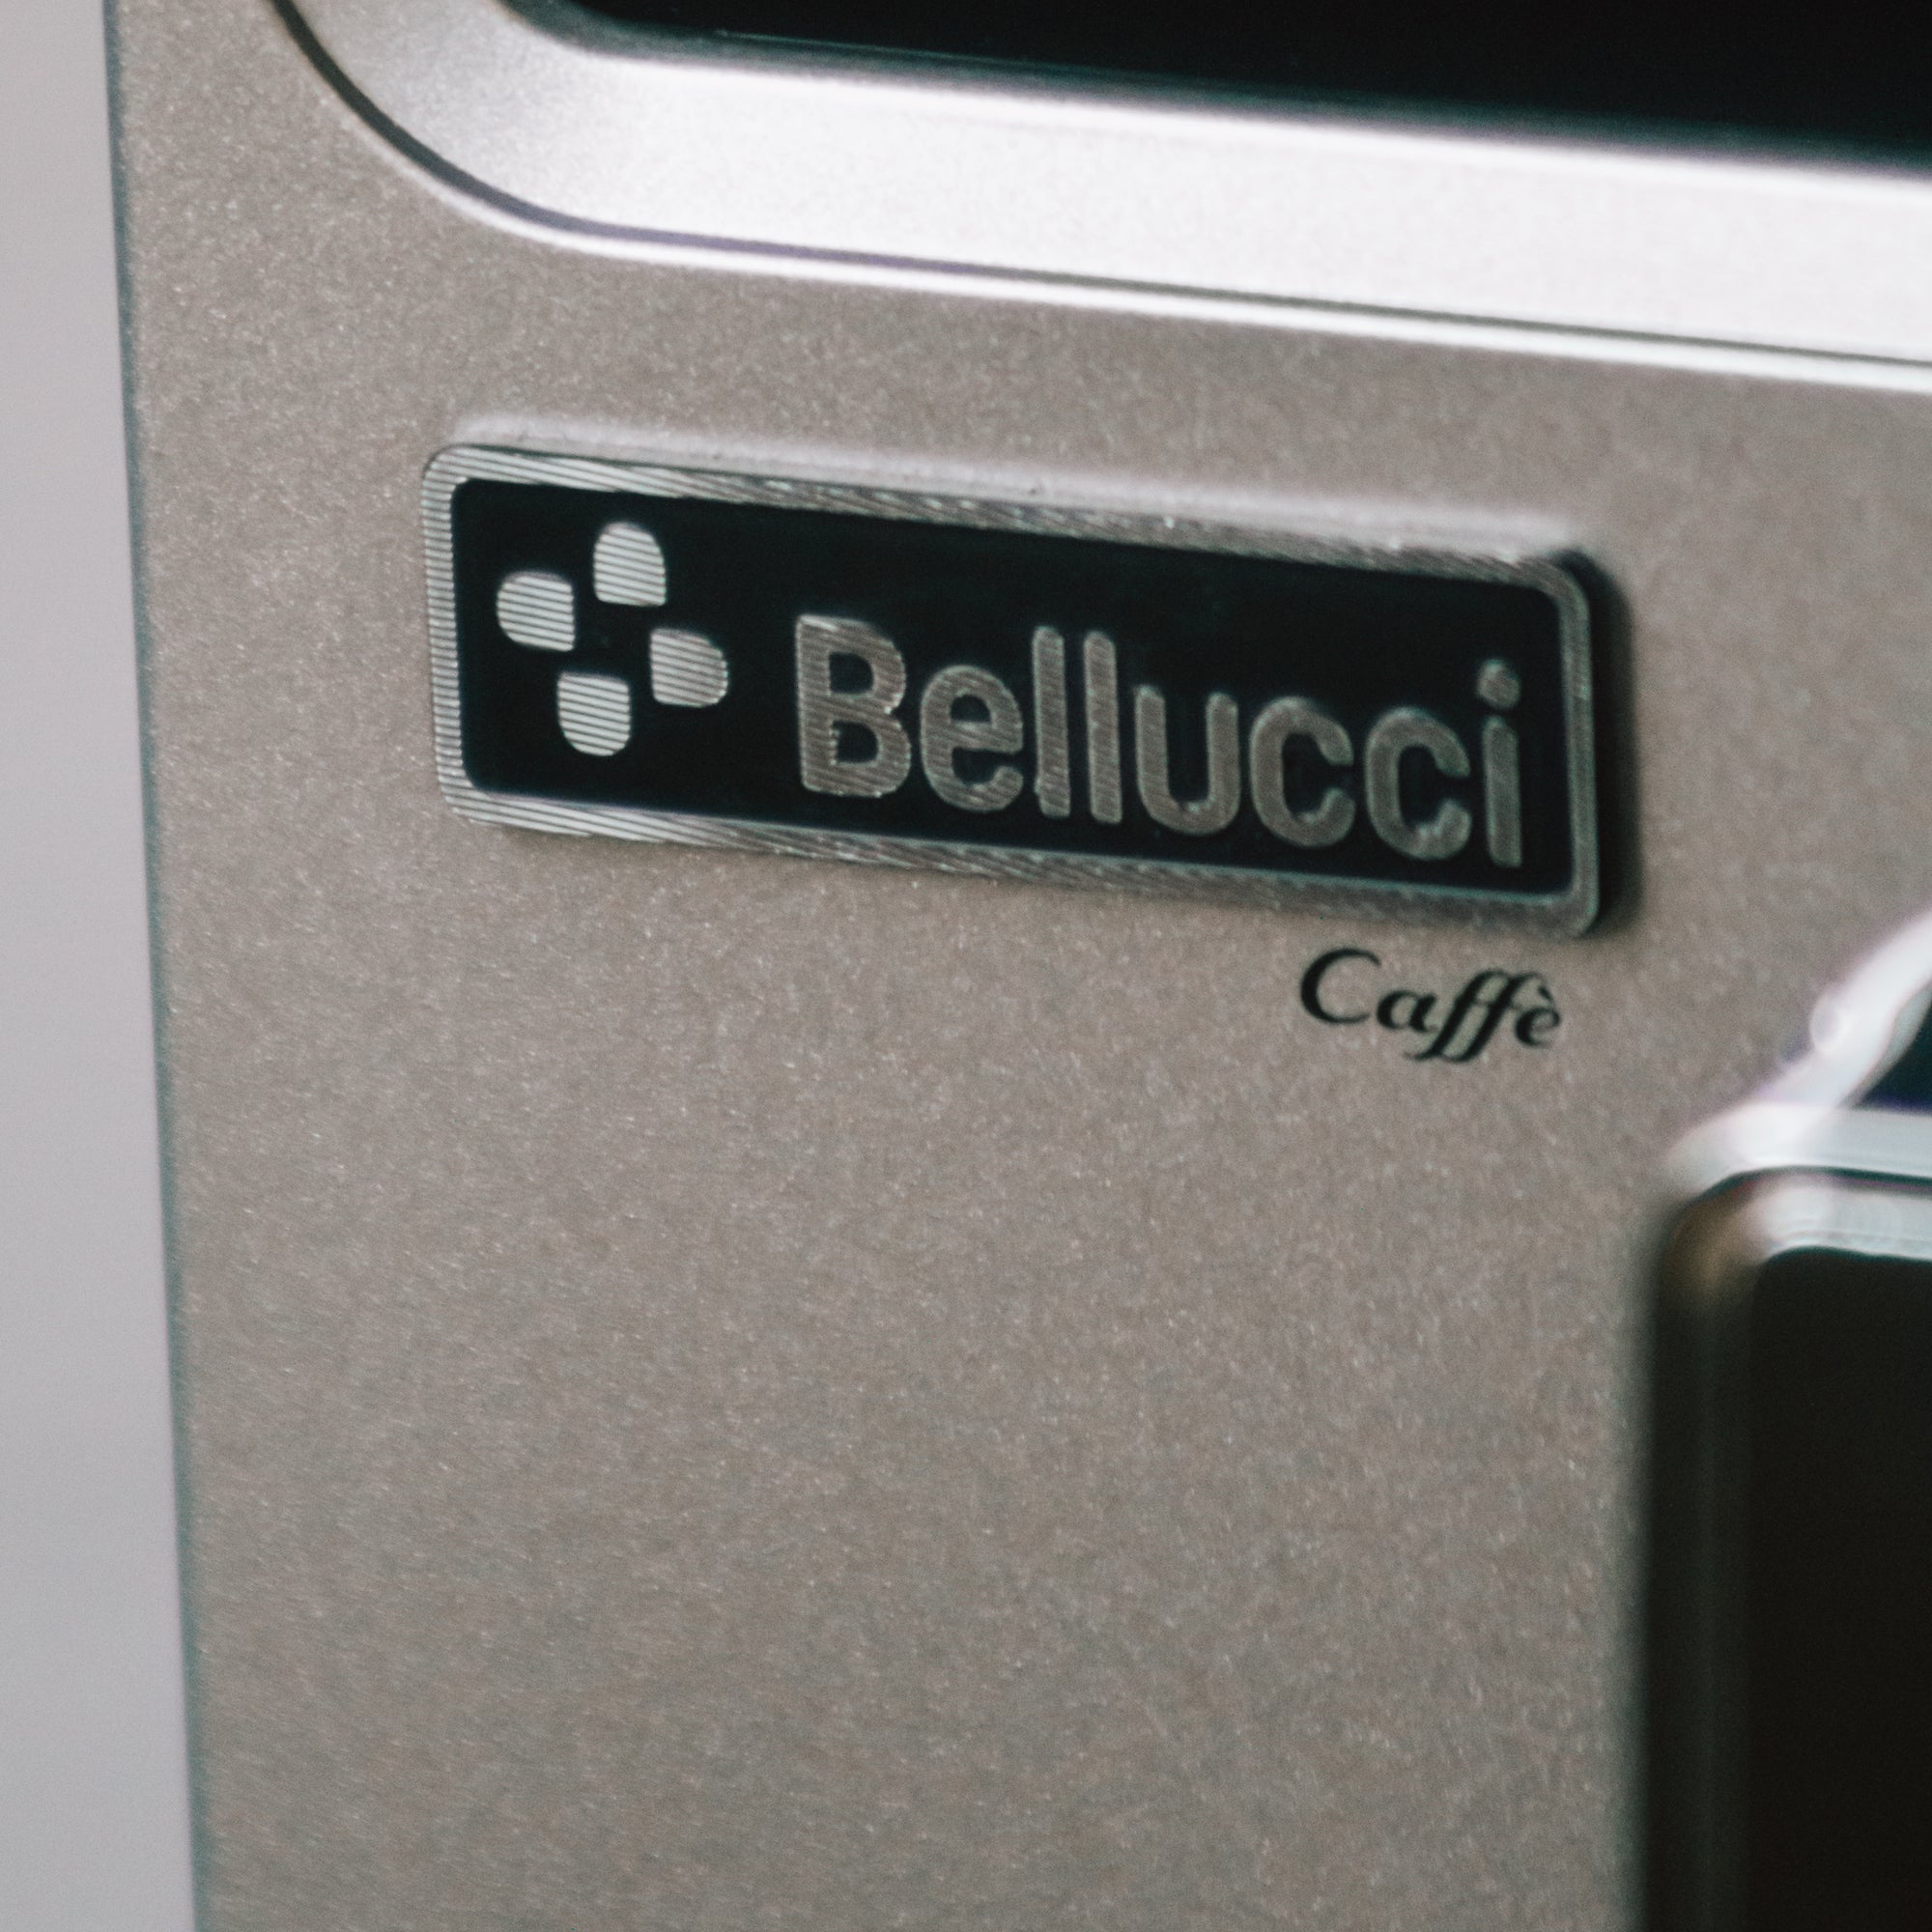 bellucci slim caffee logo espresso machine